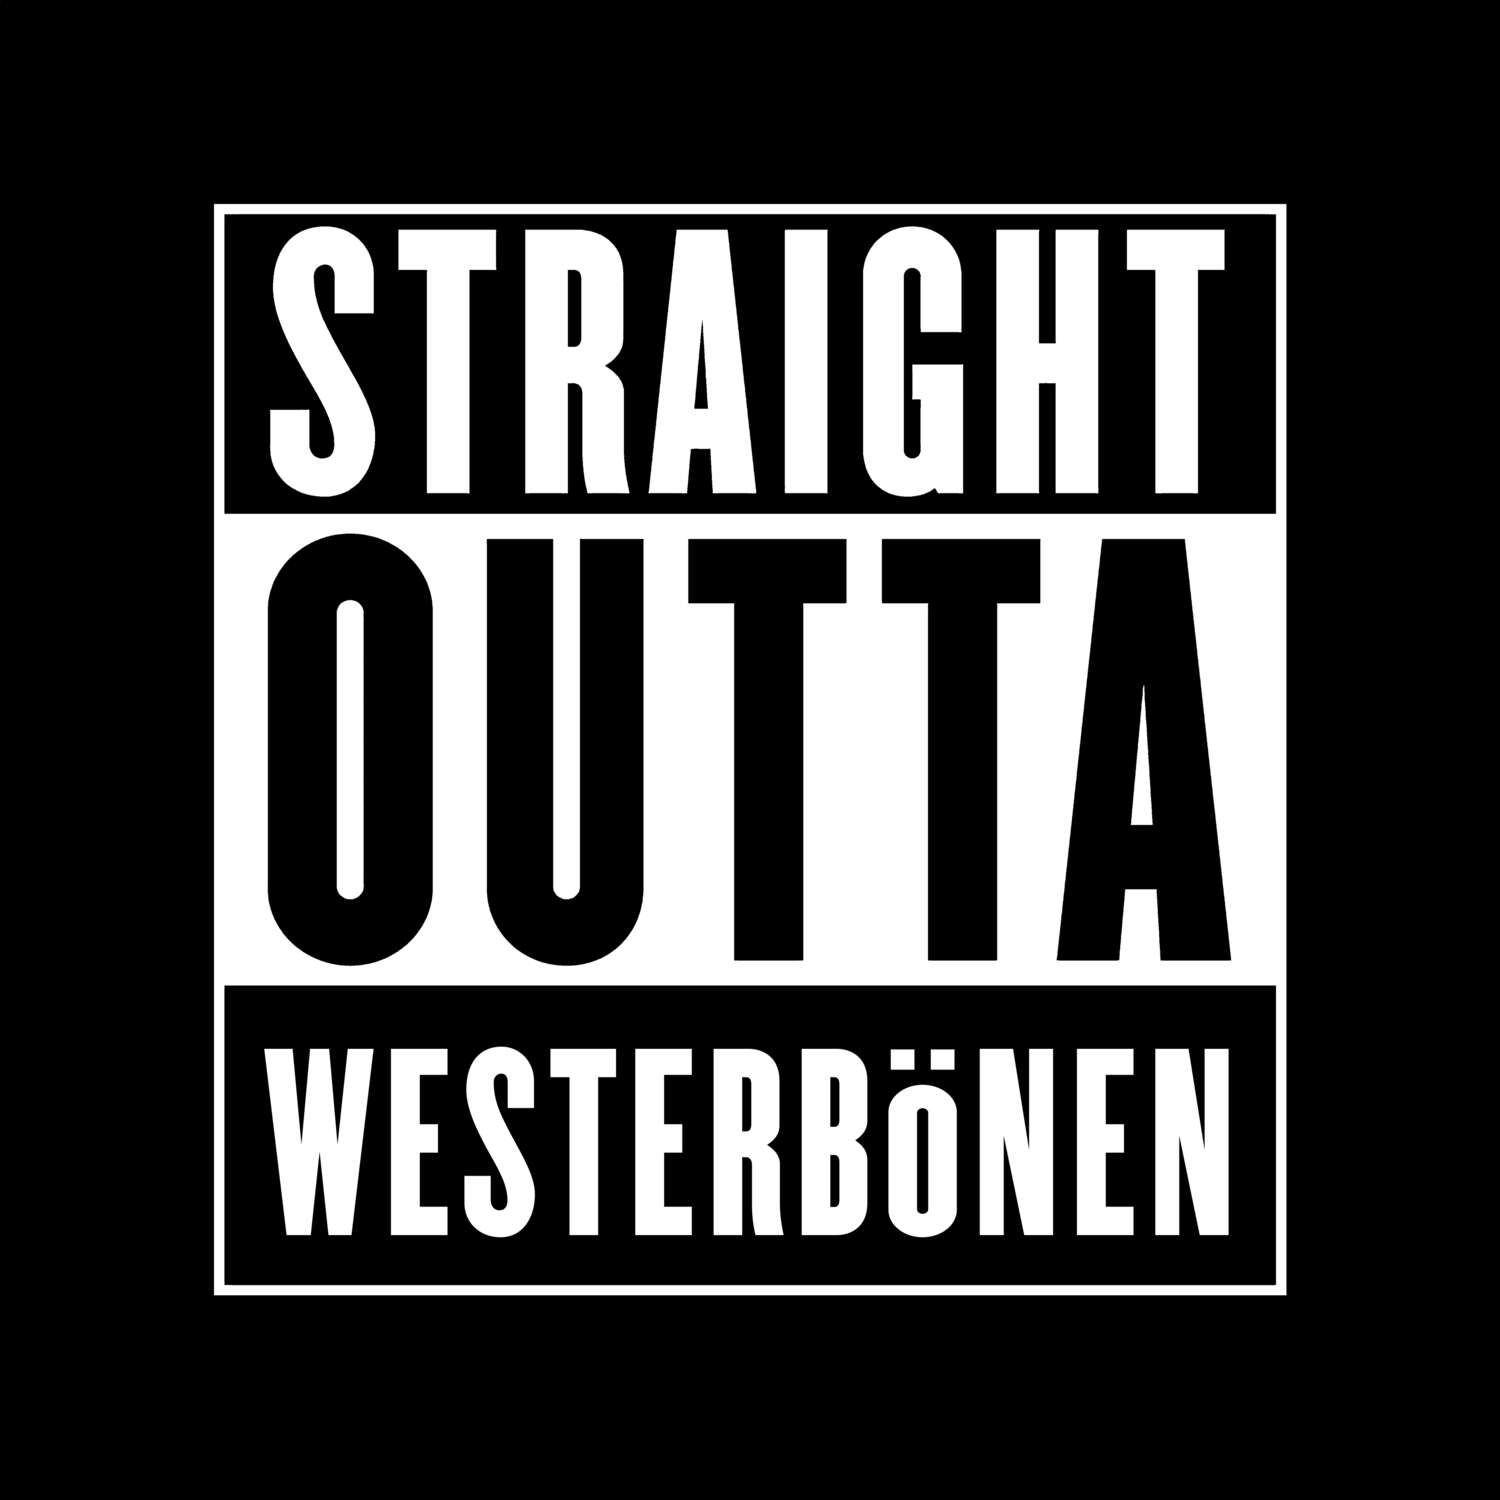 Westerbönen T-Shirt »Straight Outta«